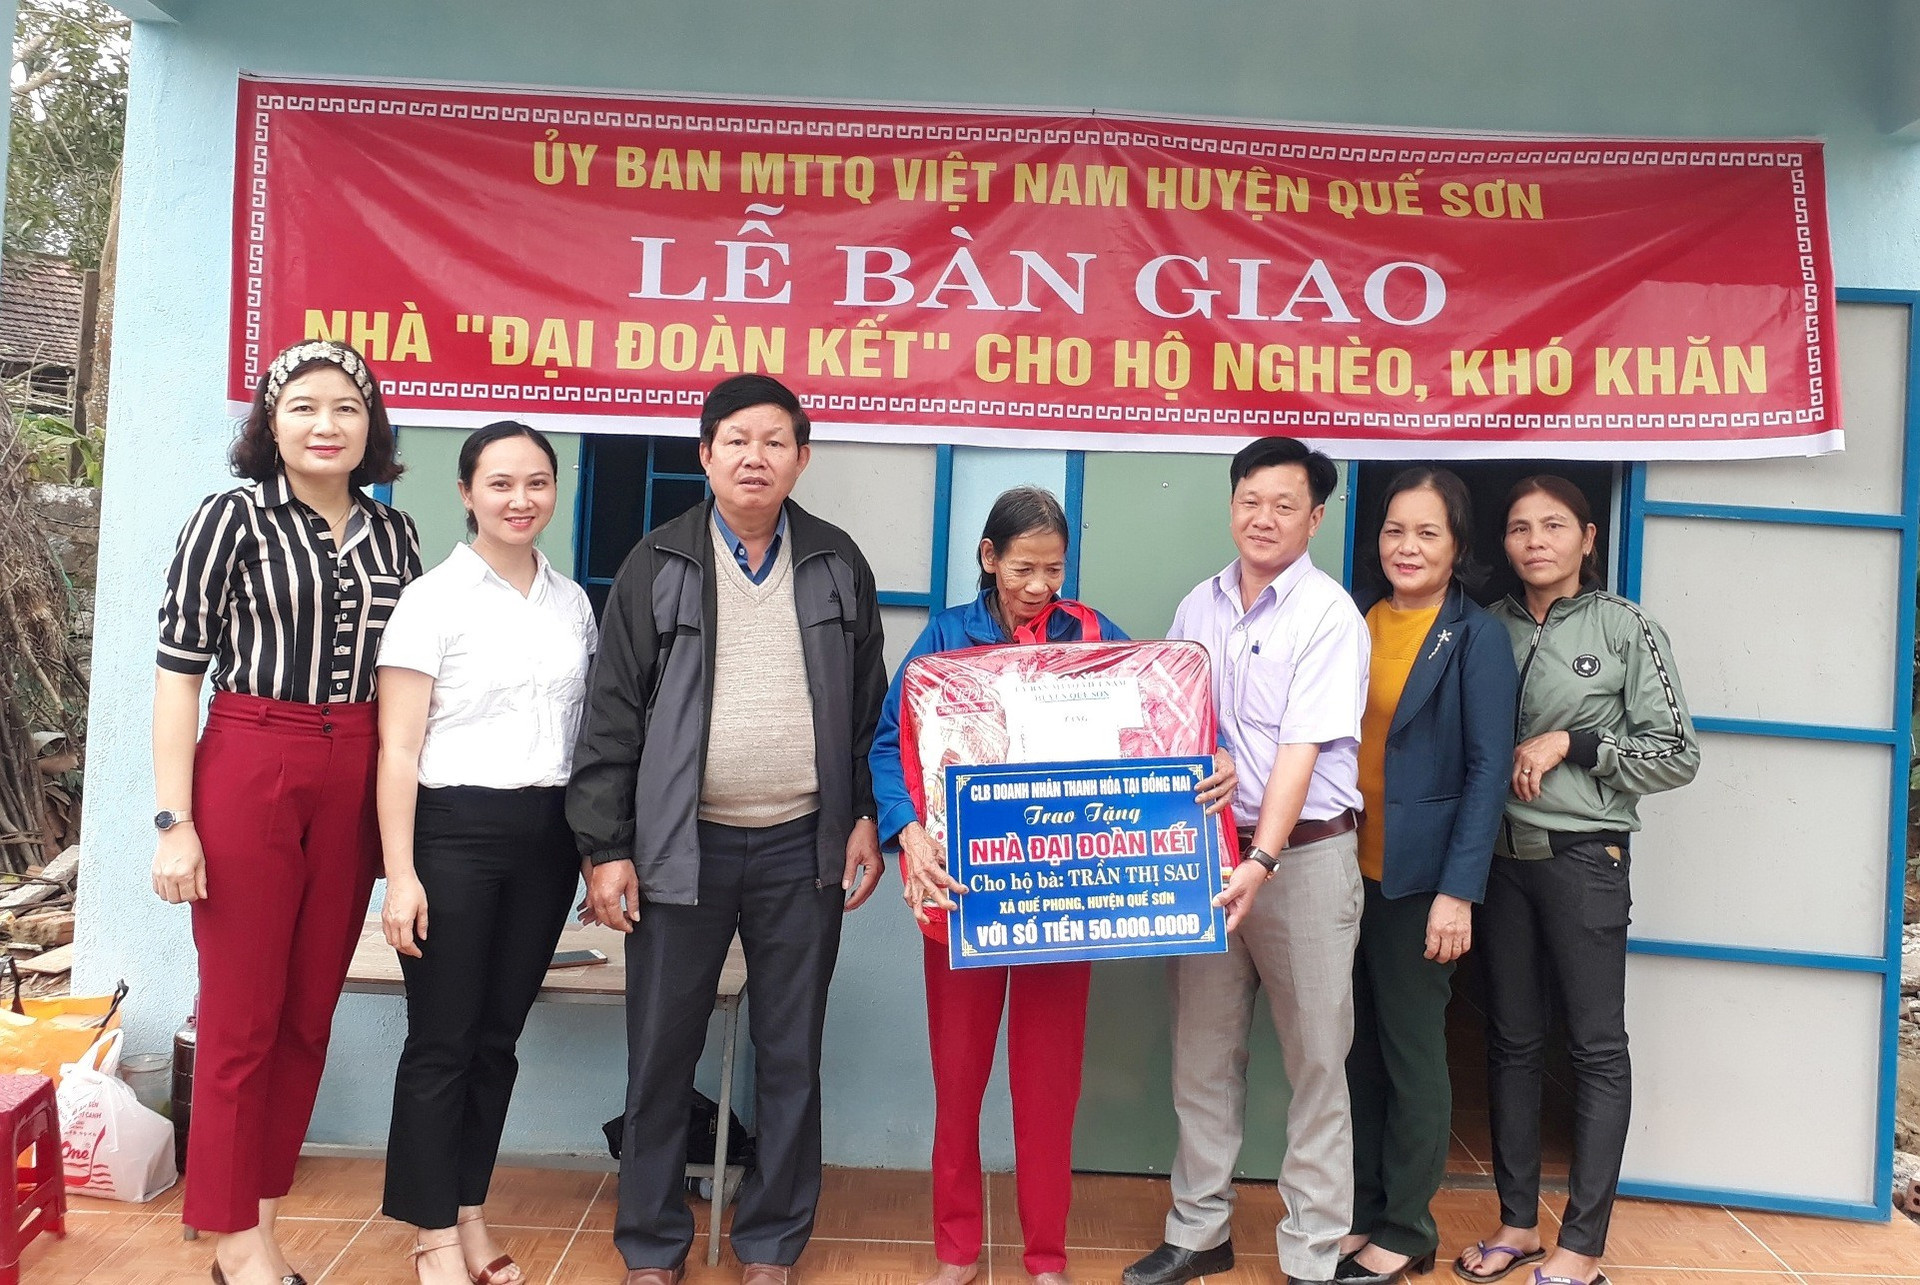 Bàn giao nhà Đại đoàn kết cho bà Trần Thị Sau. ảnh DT